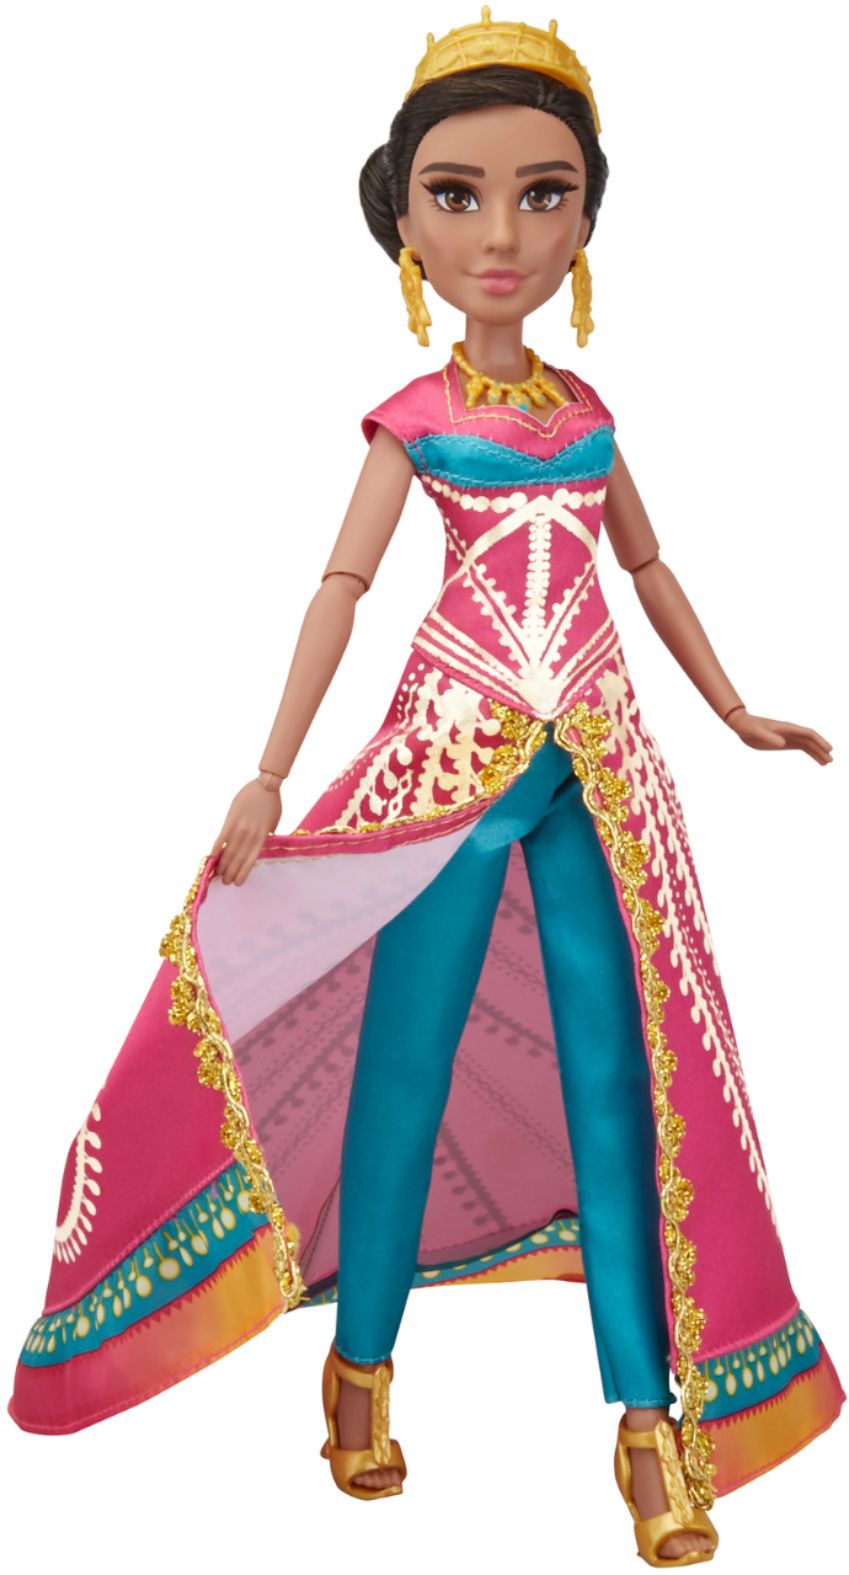 Disney Figurine Fashion Set - Aladdin - Jasmine-Pset-9606